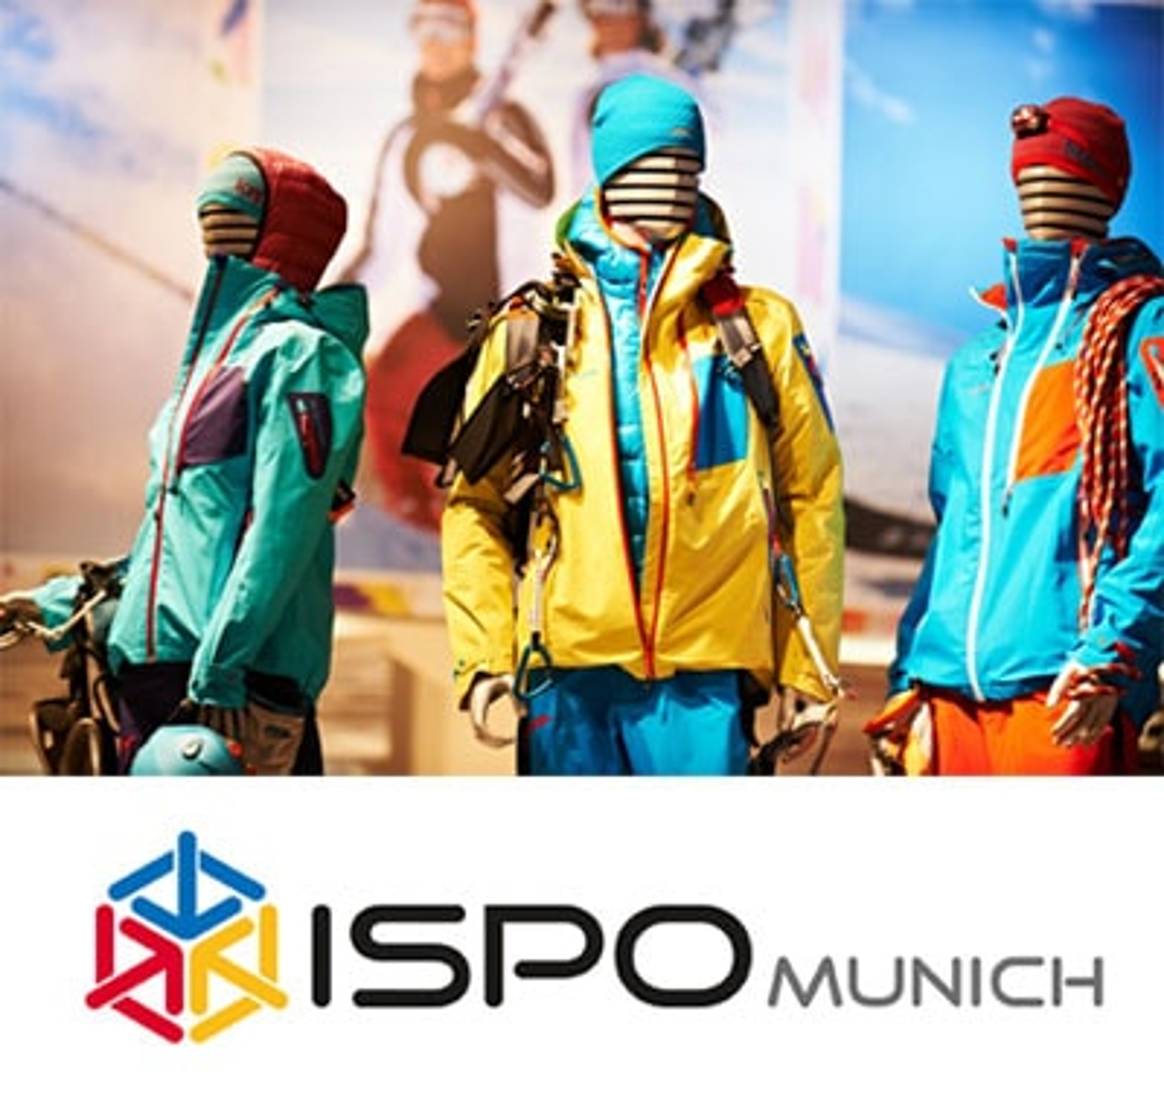 ISPO MUNICH – La plate-forme internationale leader du sport business